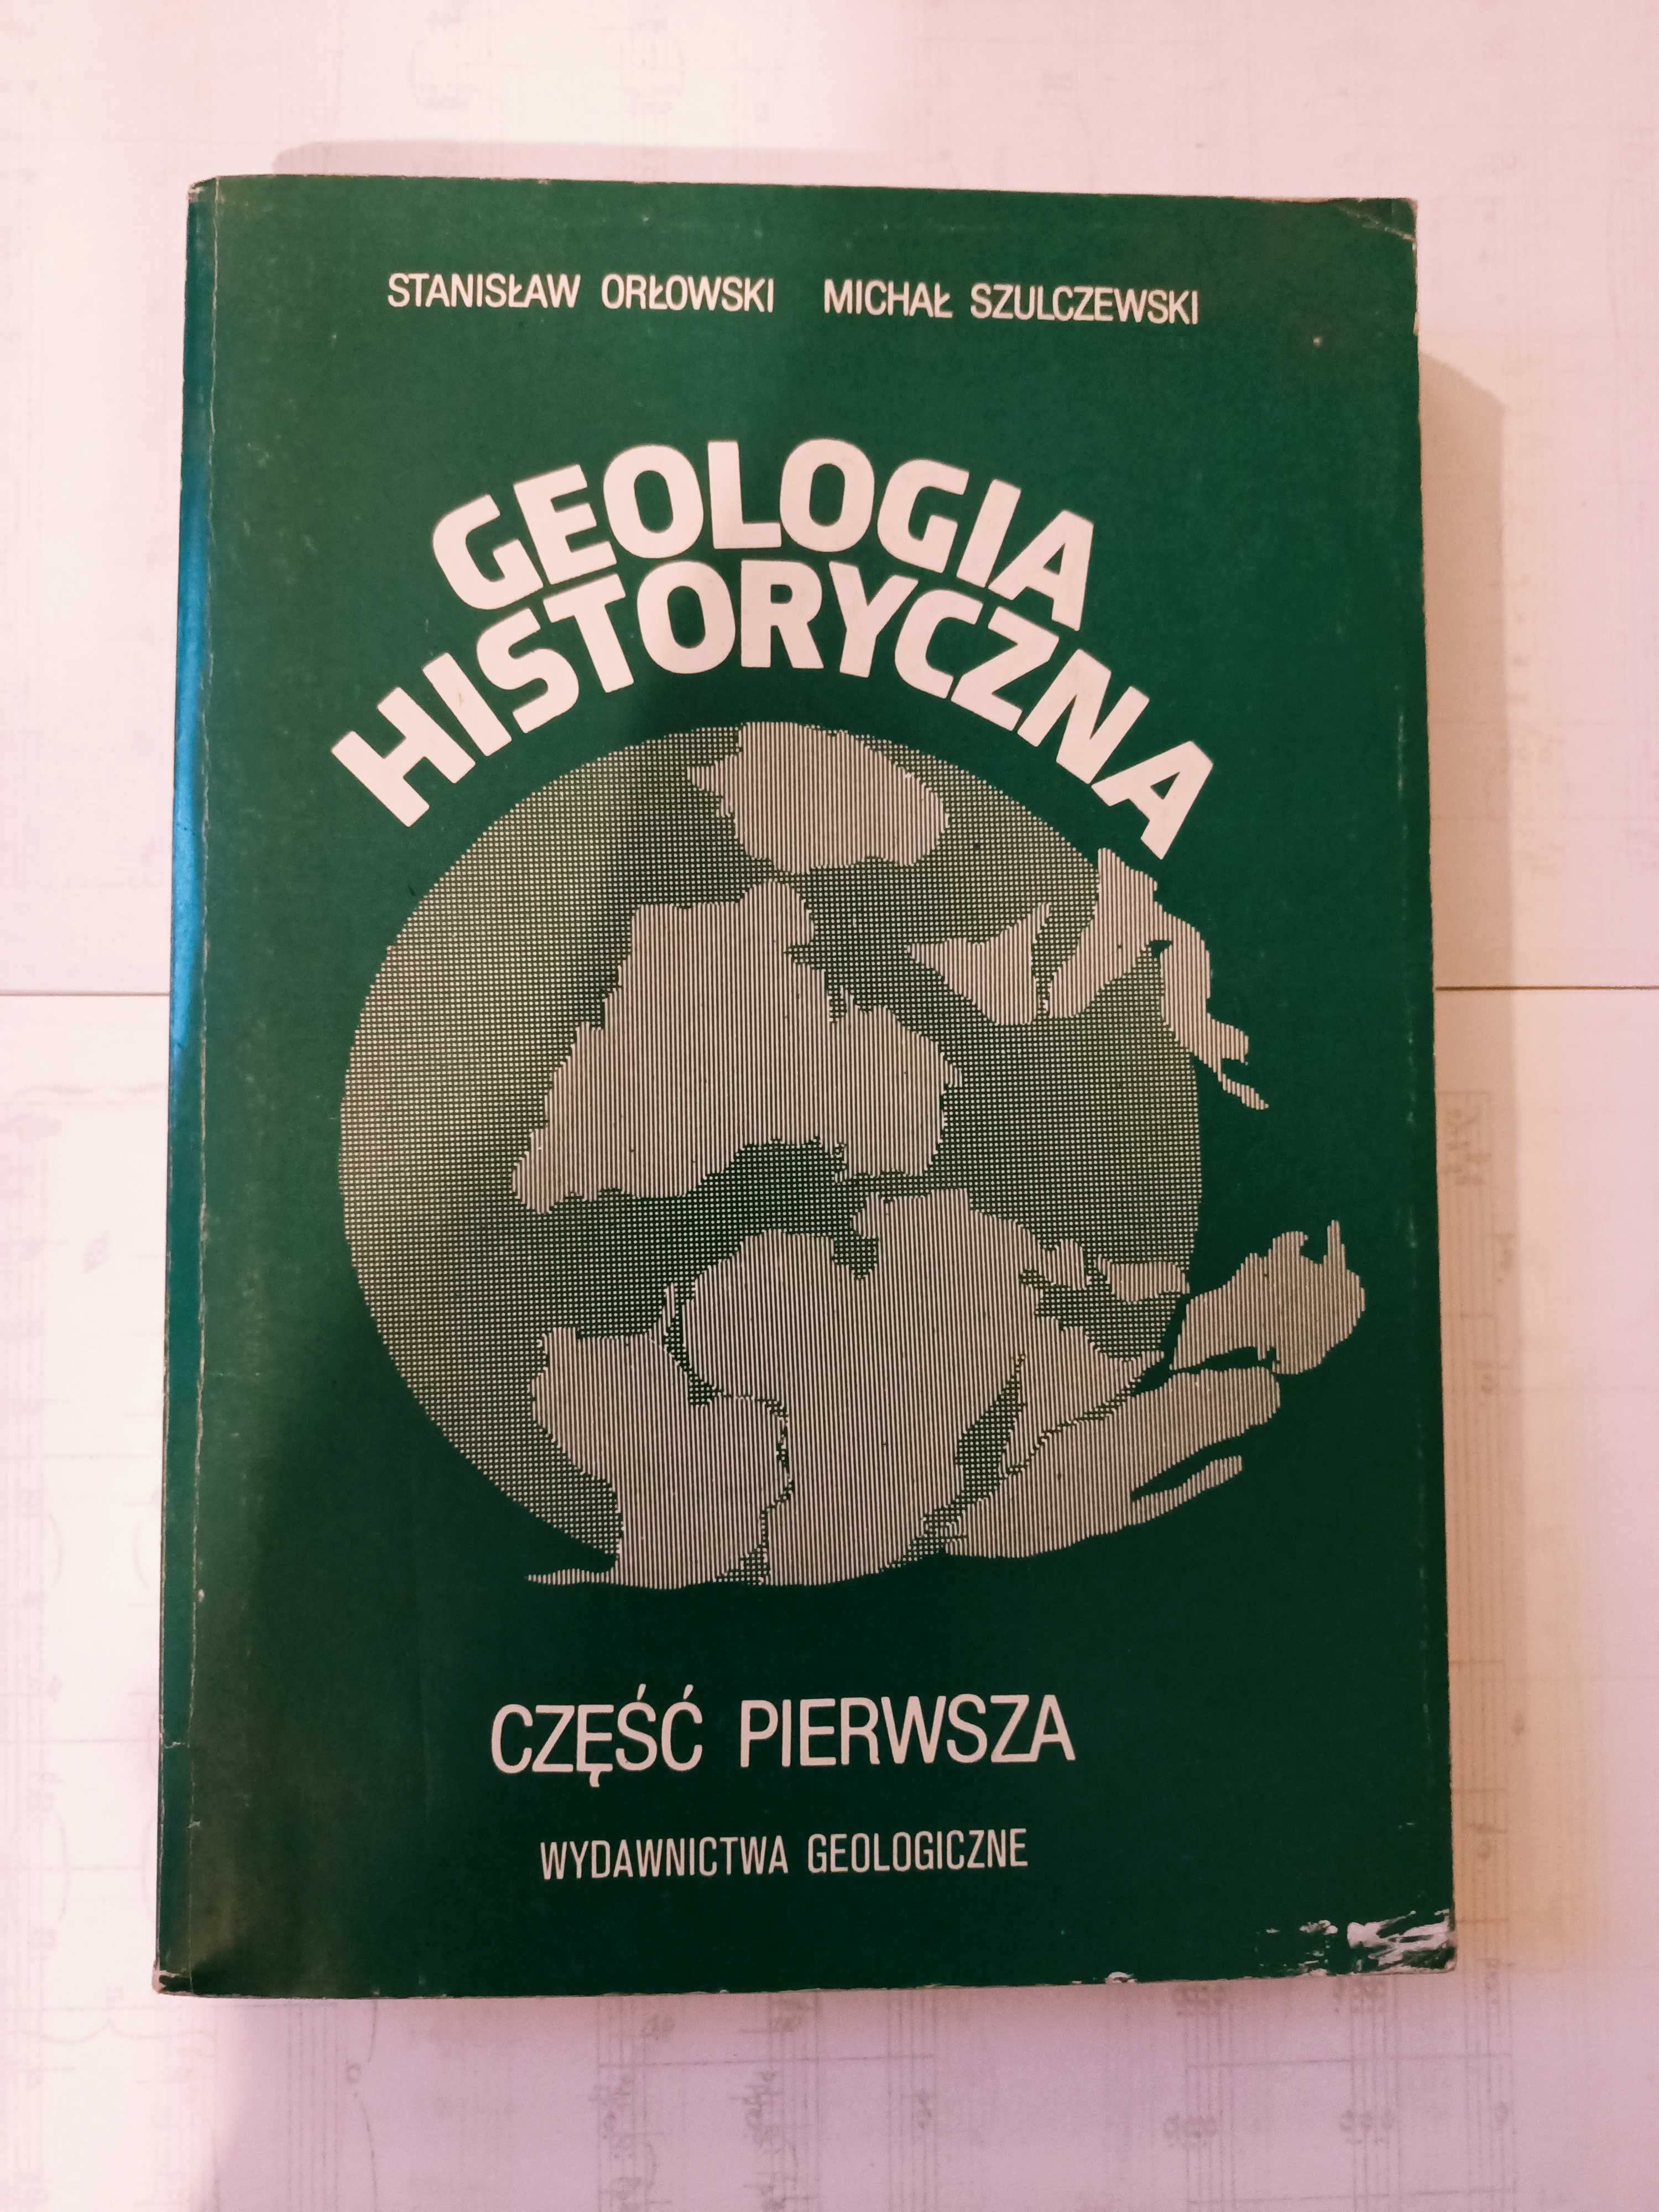 Książka GEOLOGIA HISTORYCZNA, część pierwsza